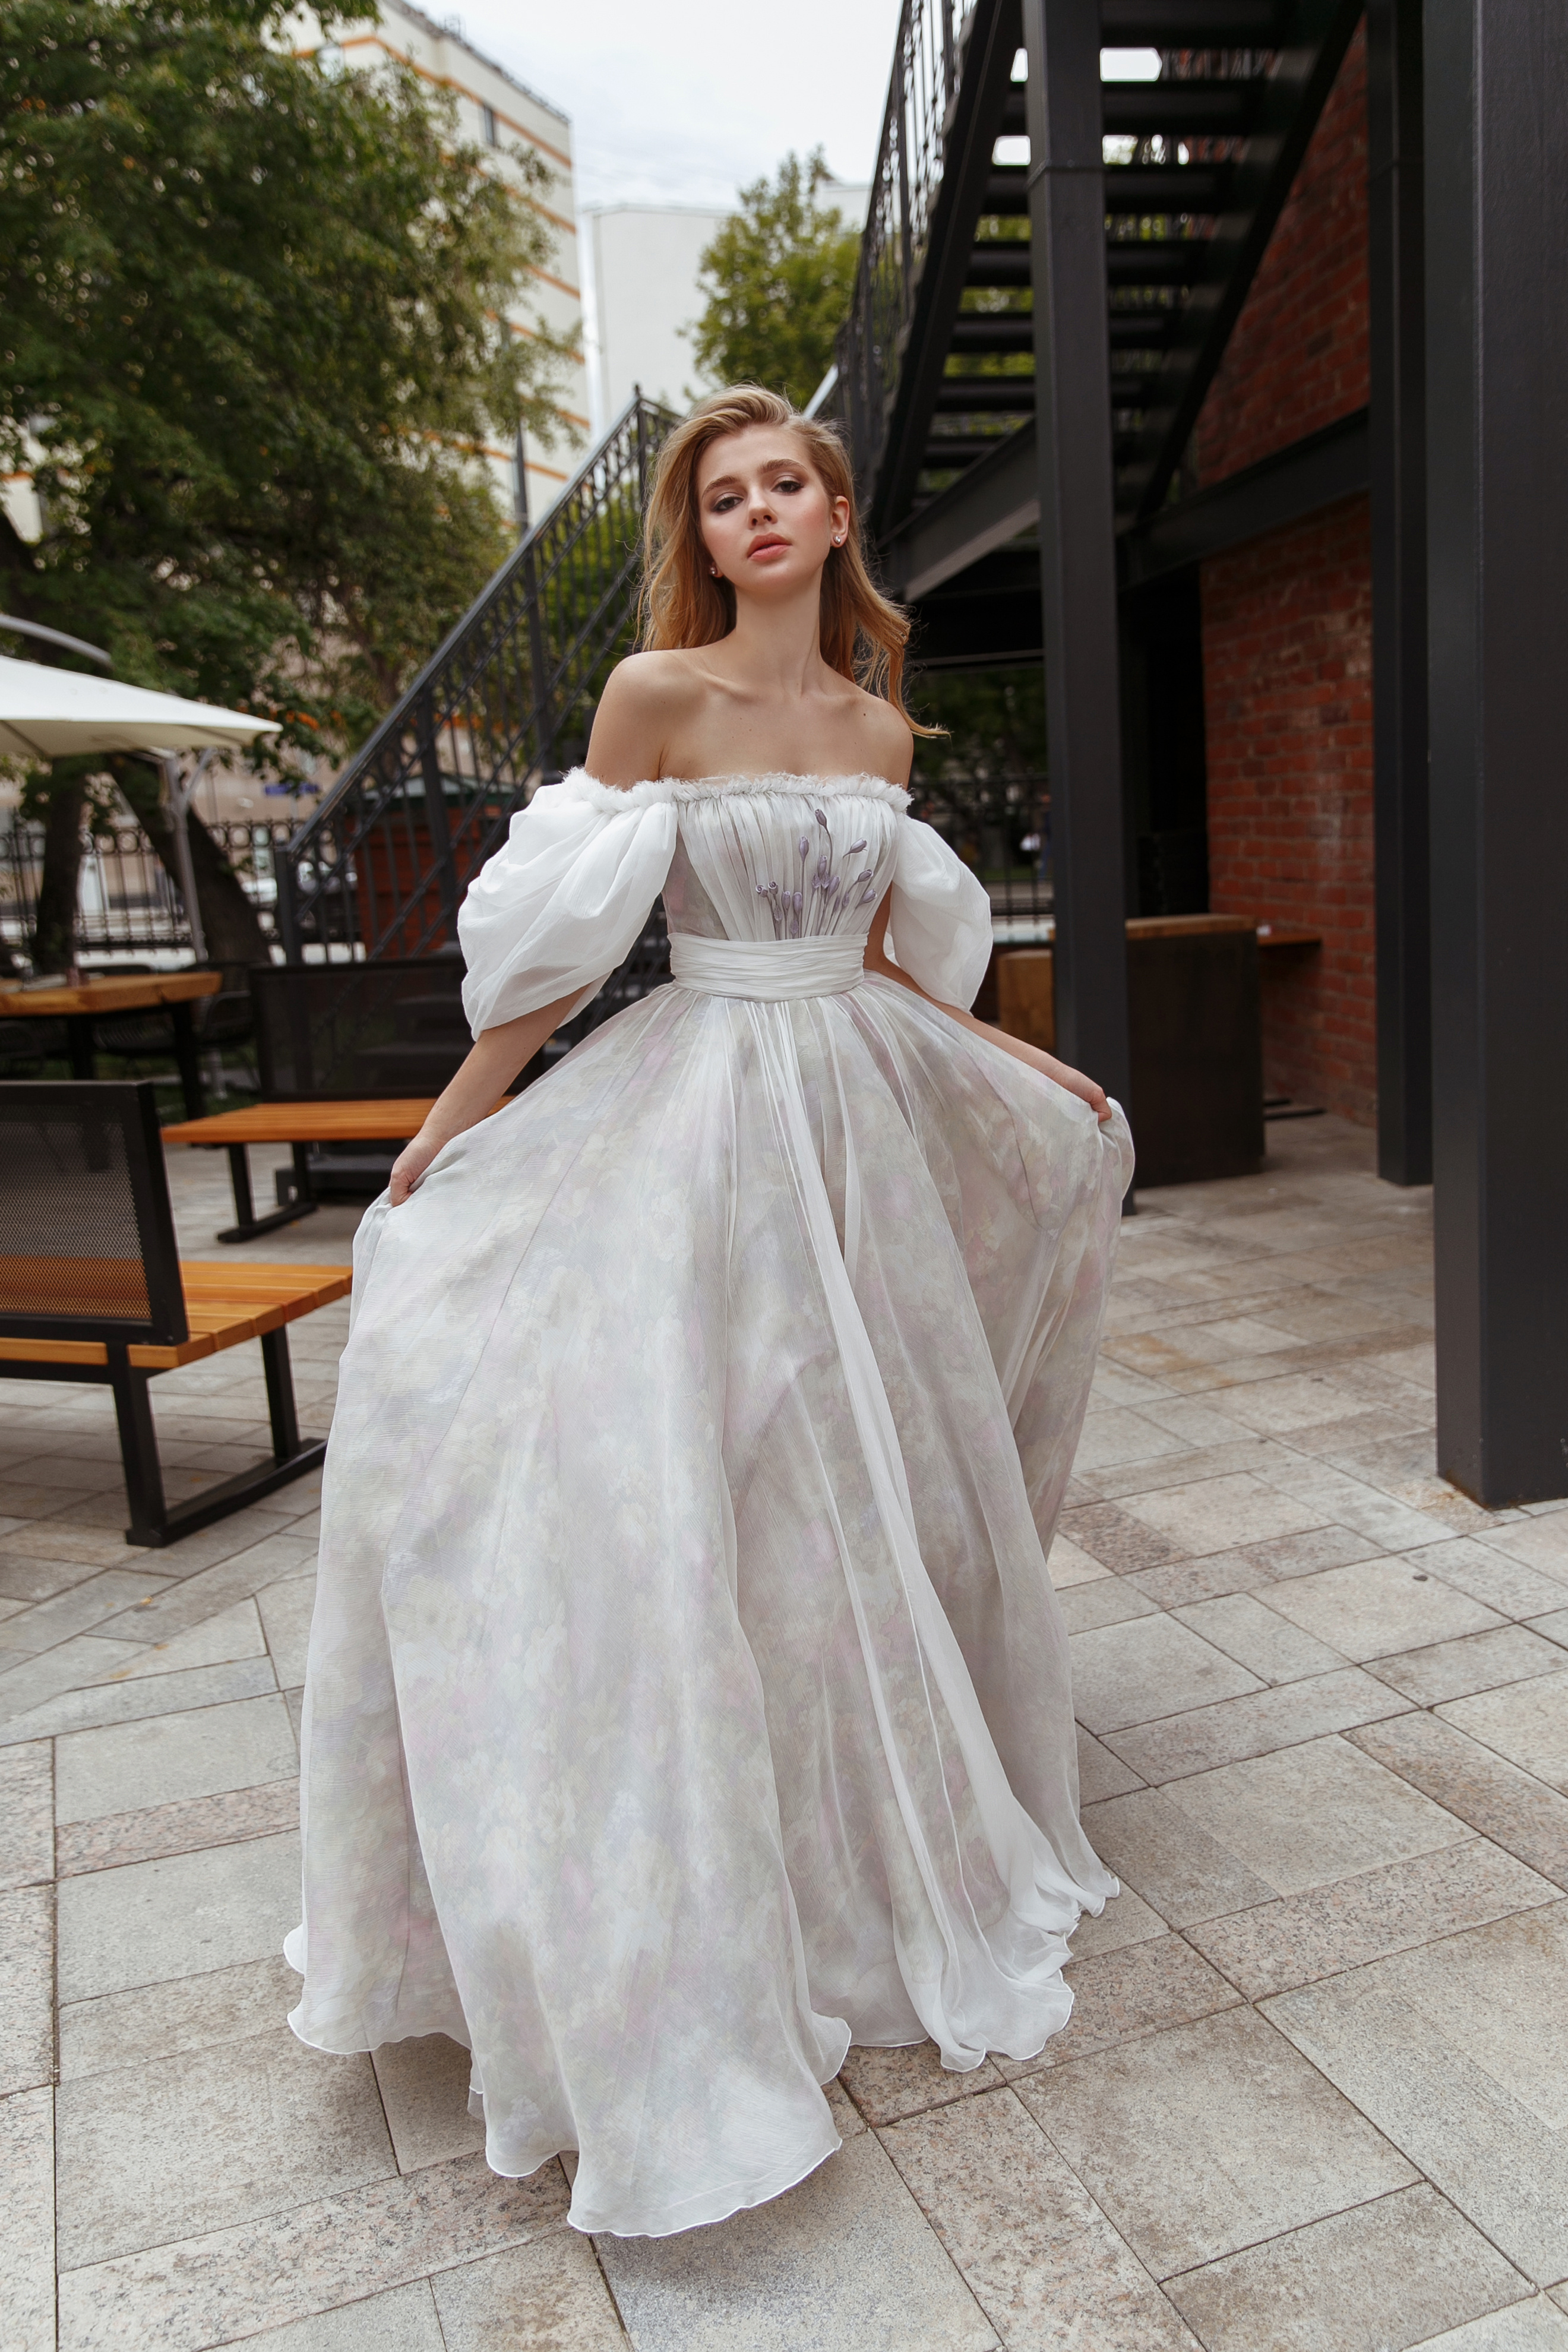 Купить свадебное платье «Хилори» Рара Авис из коллекции Флорал Парадайз 2018 года в салоне свадебных платьев